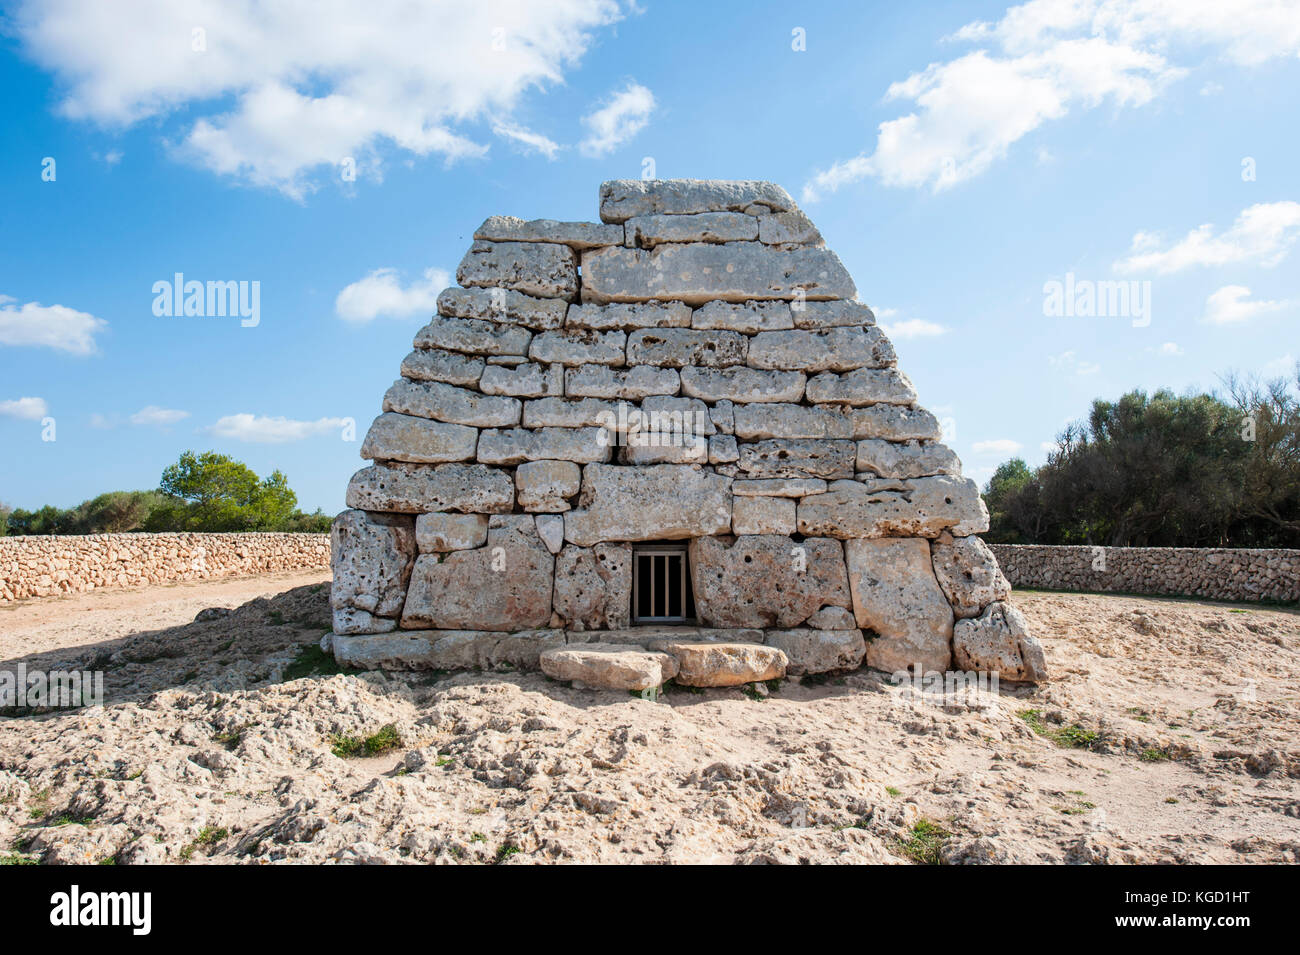 Naveta d'Es Tudons - megalithische Grabstätte in der Nähe von Ciutadella im westlichen Teil von Menorca, Balearen, Spanien, Mediterrranean Meer. Stockfoto